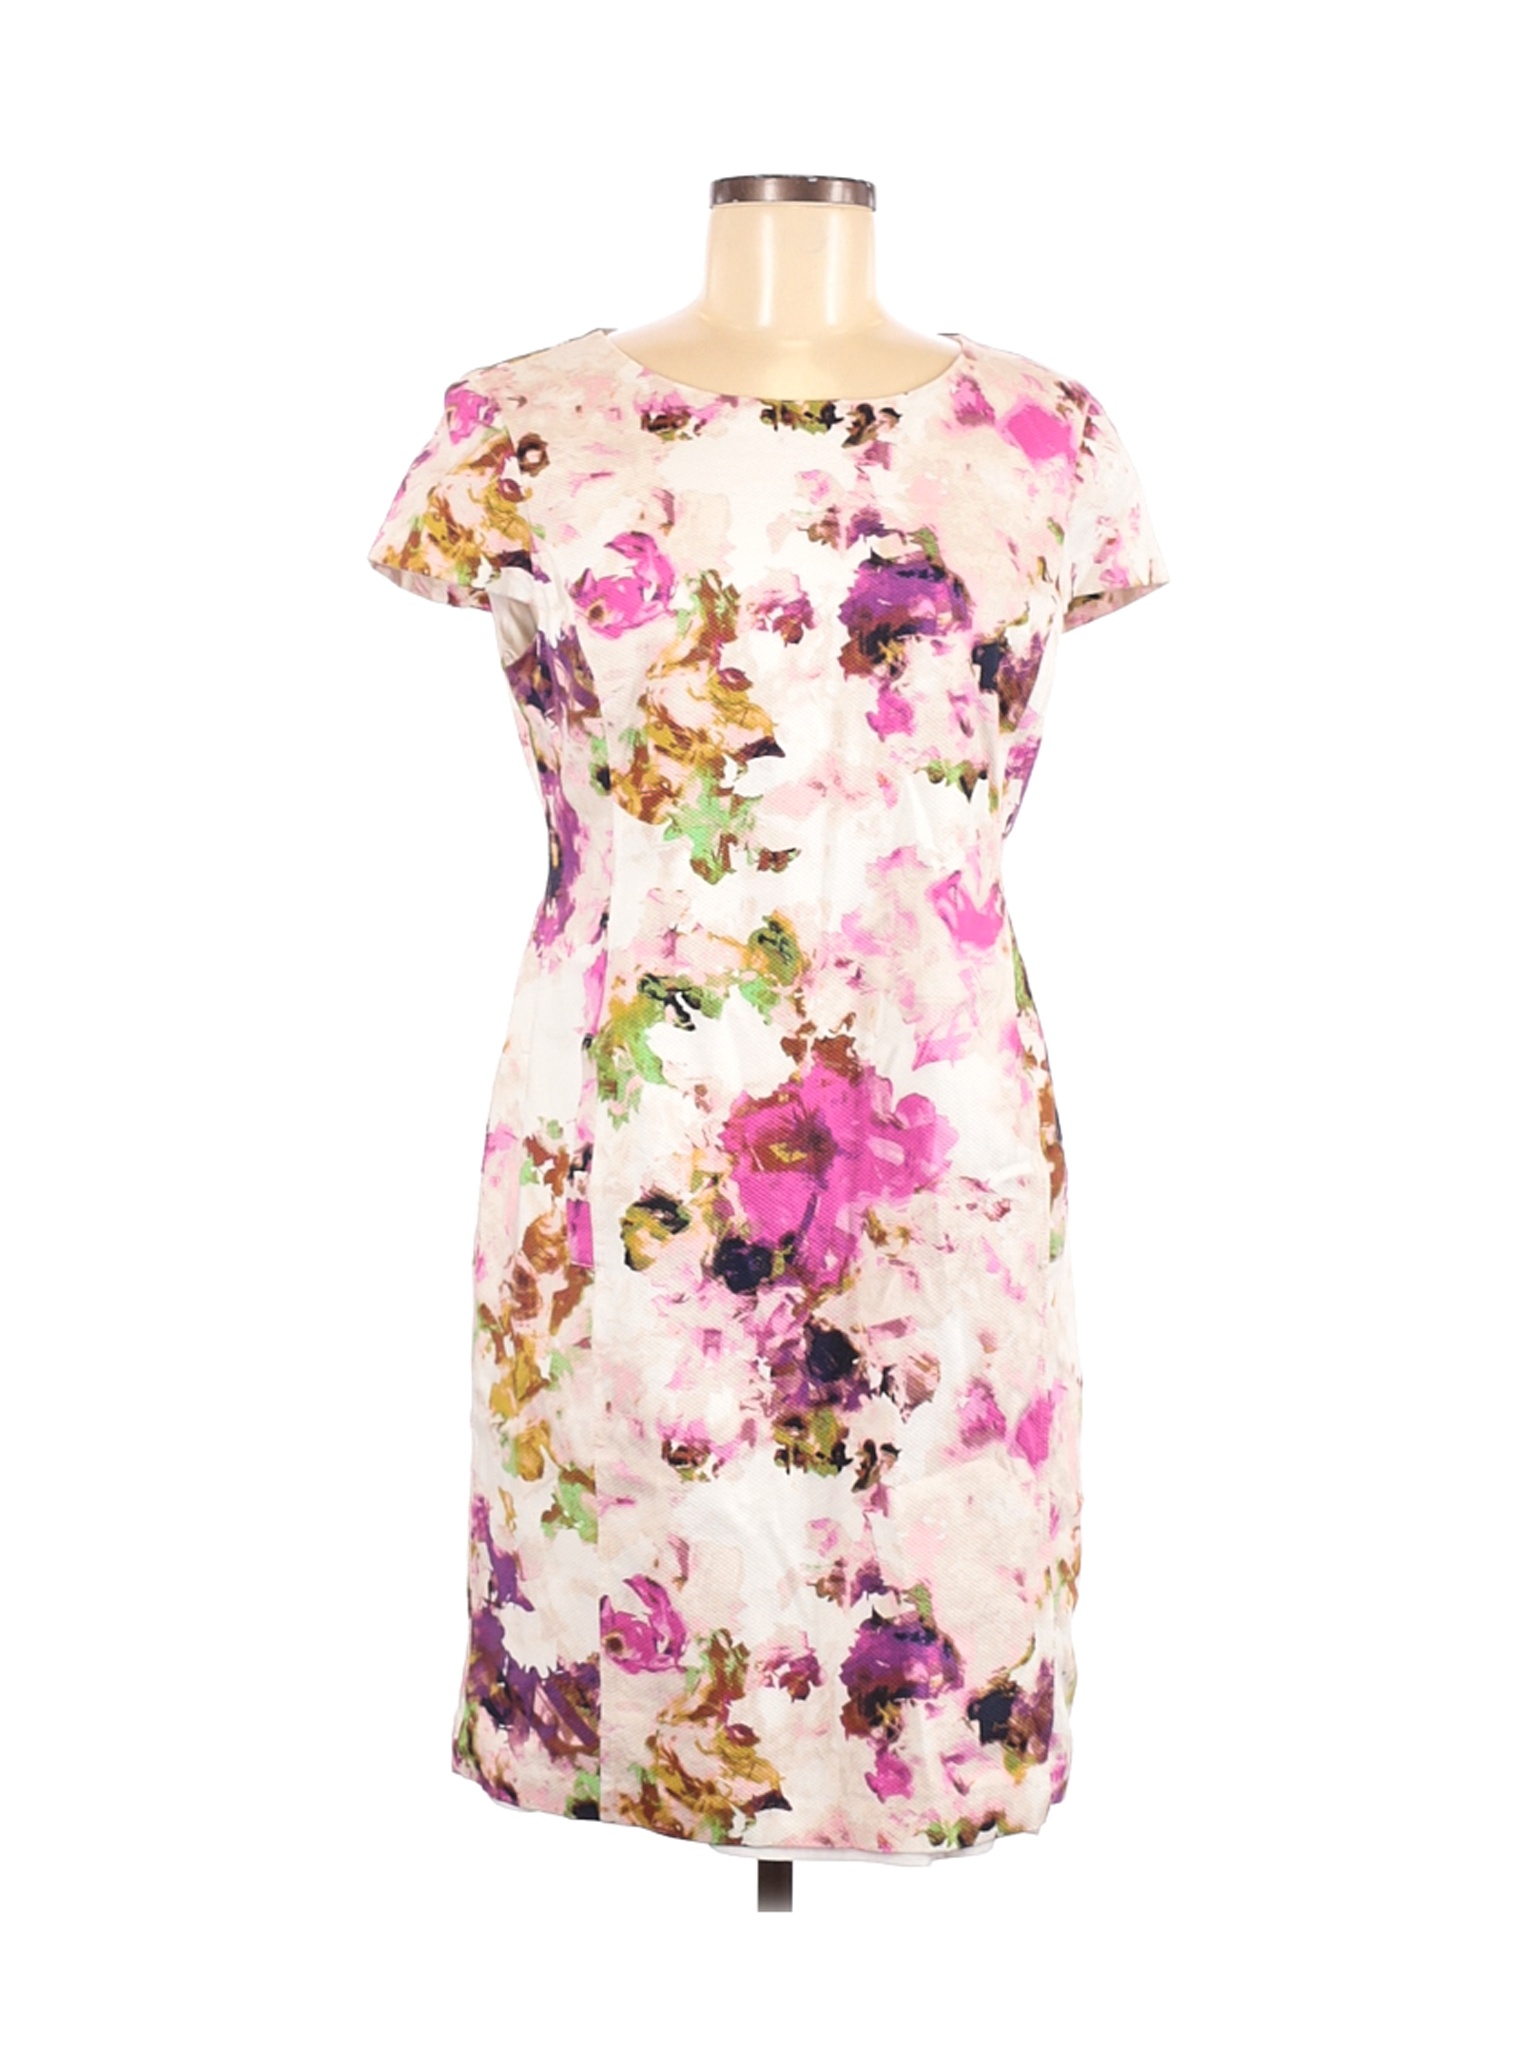 Liz Claiborne Women Ivory Casual Dress 8 | eBay